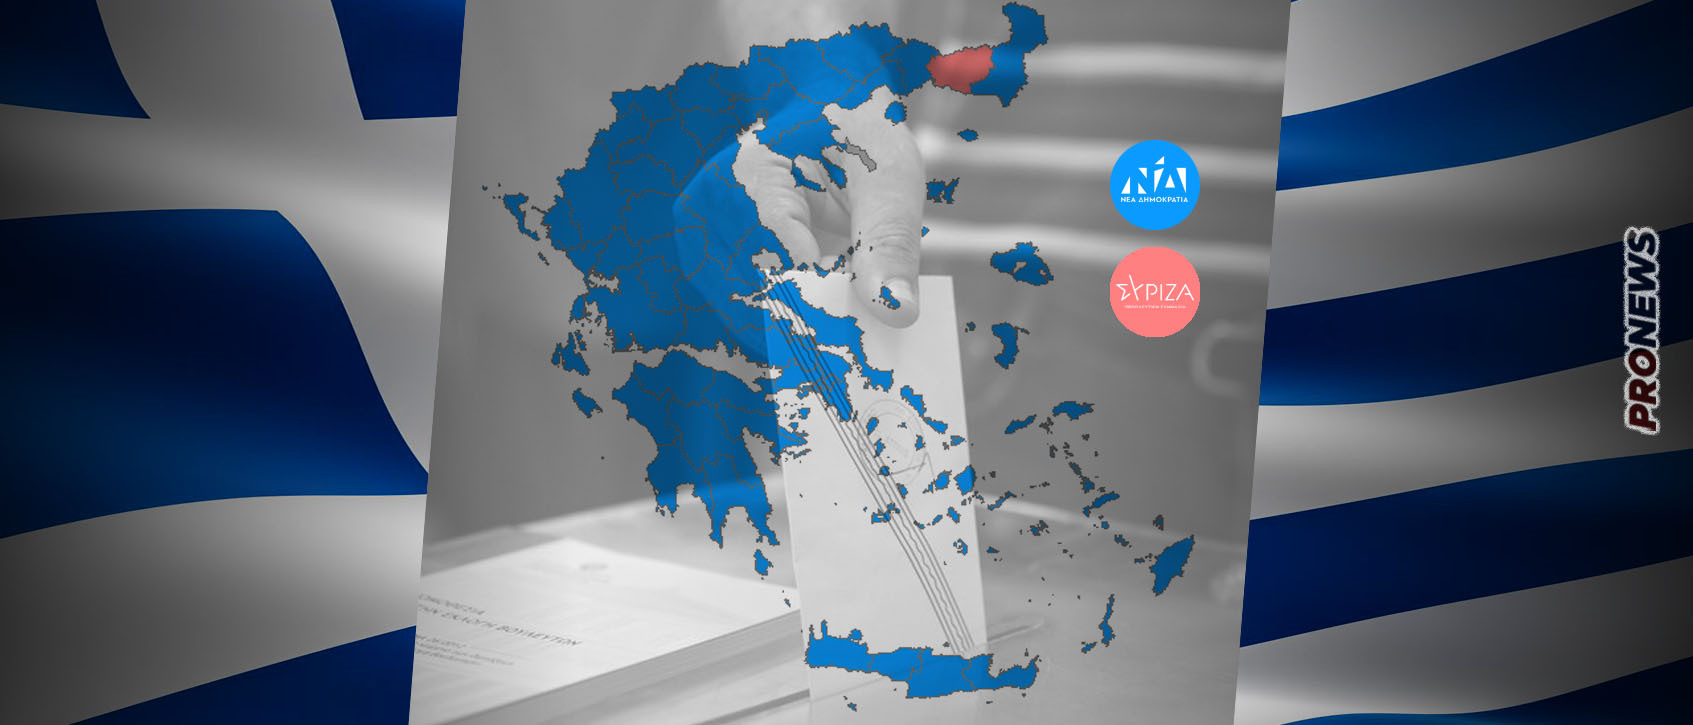 Επίσημα αποτελέσματα: Πάνω από 40% η Νέα Δημοκρατία – Στο 20% ο ΣΥΡΙΖΑ – Πέντε κόμματα στη Βουλή (upd)